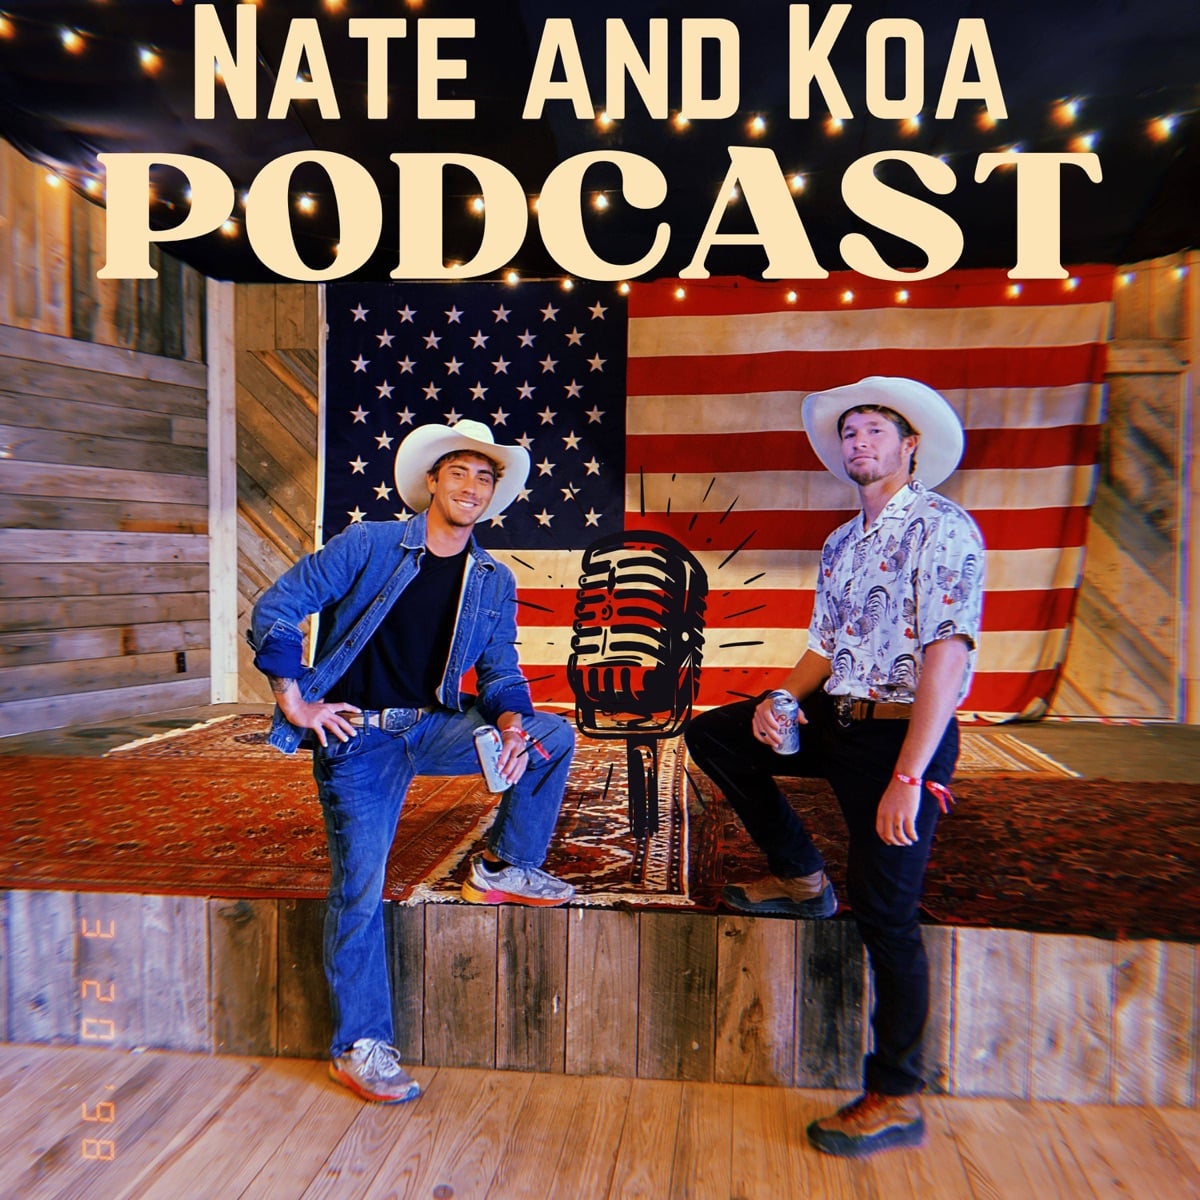 Nate & Koa Podcast for surfers